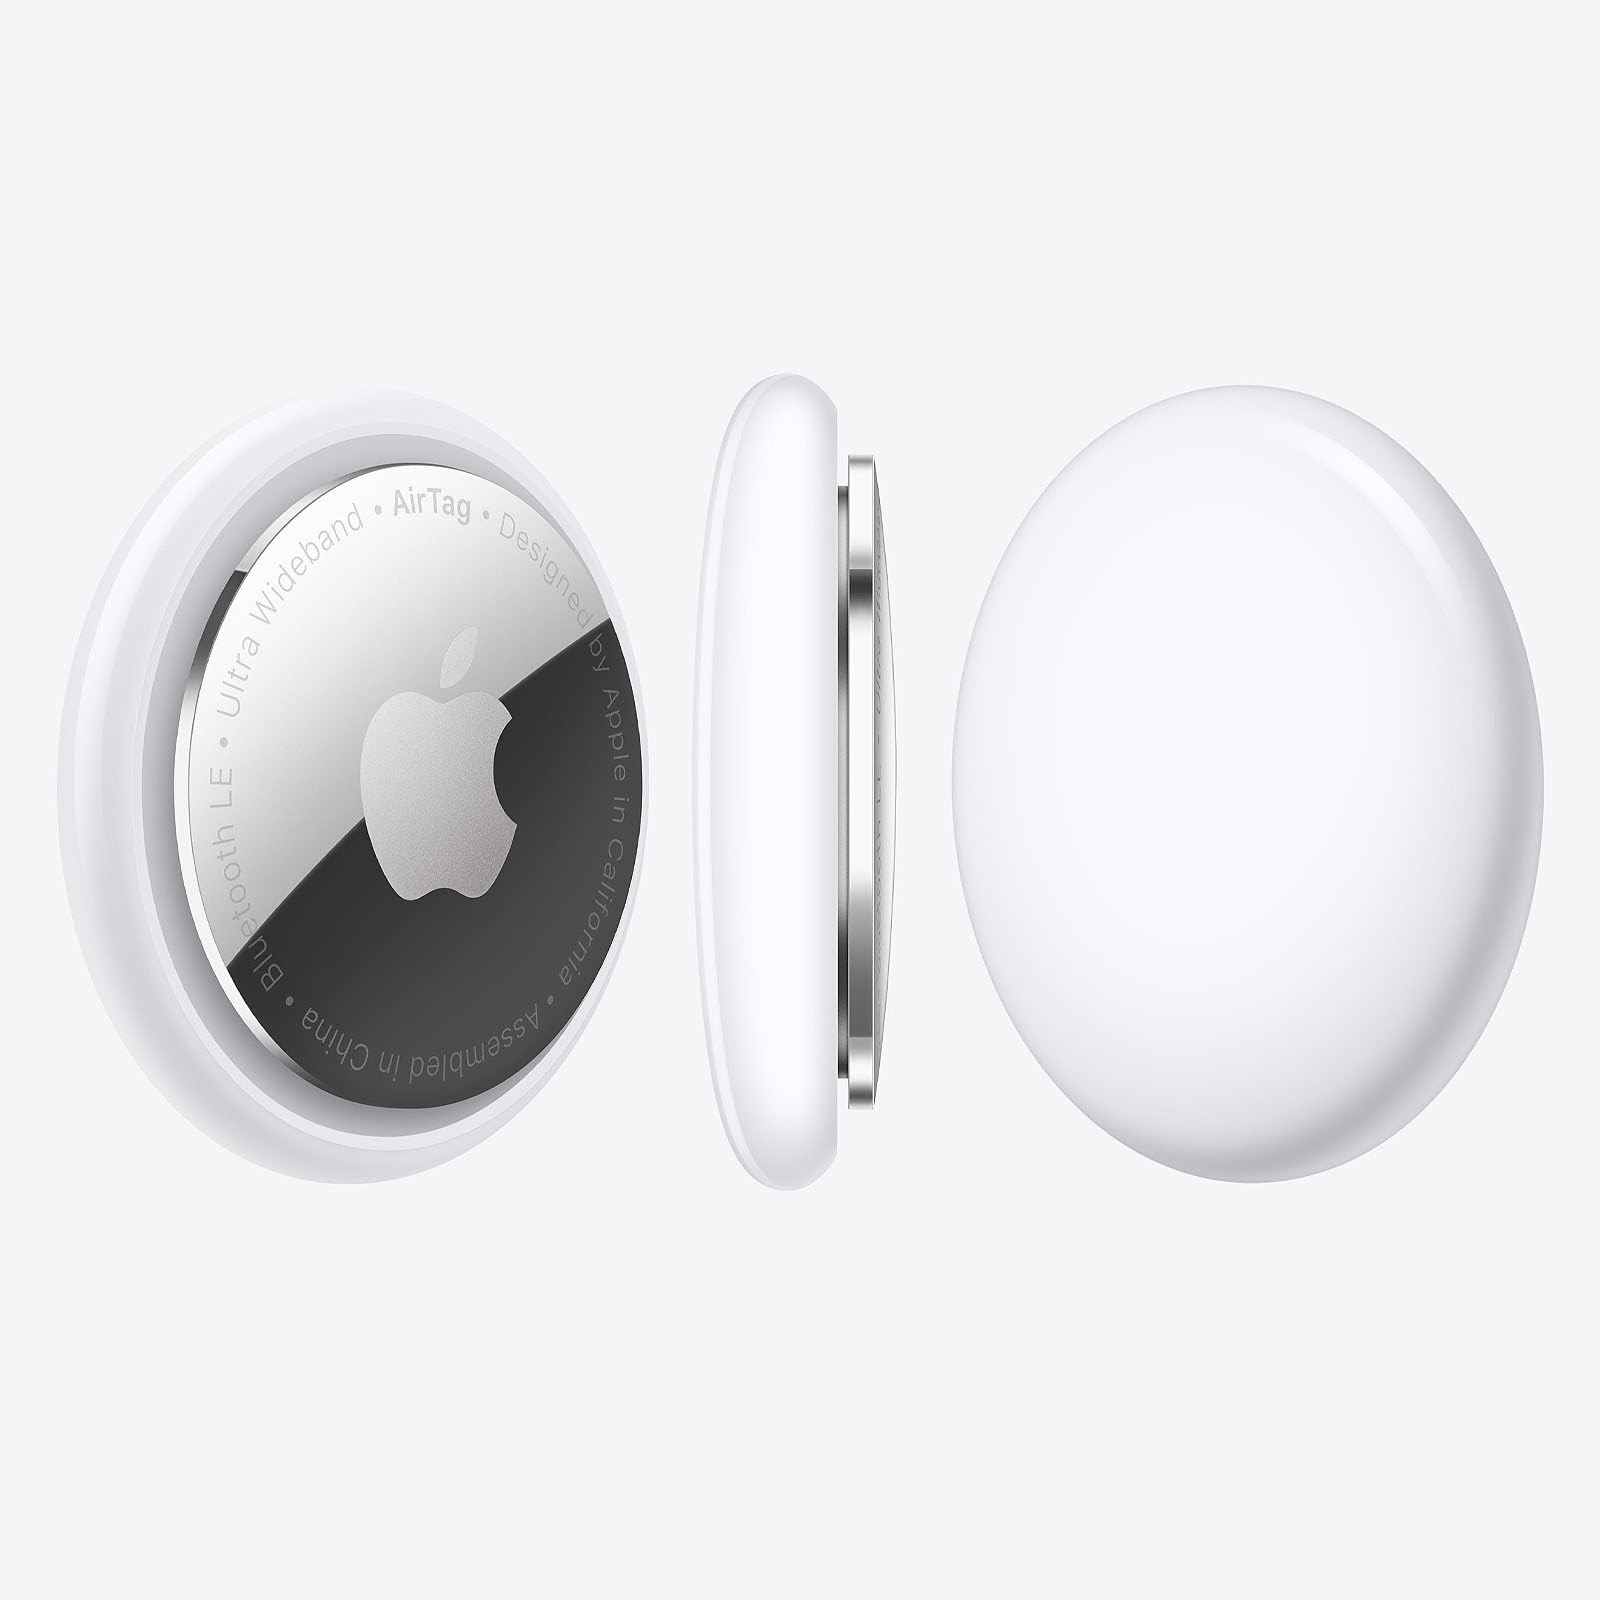 Tracker connecté Apple AirTag (Pack de 4) - Accessoire téléphonie Apple - 1